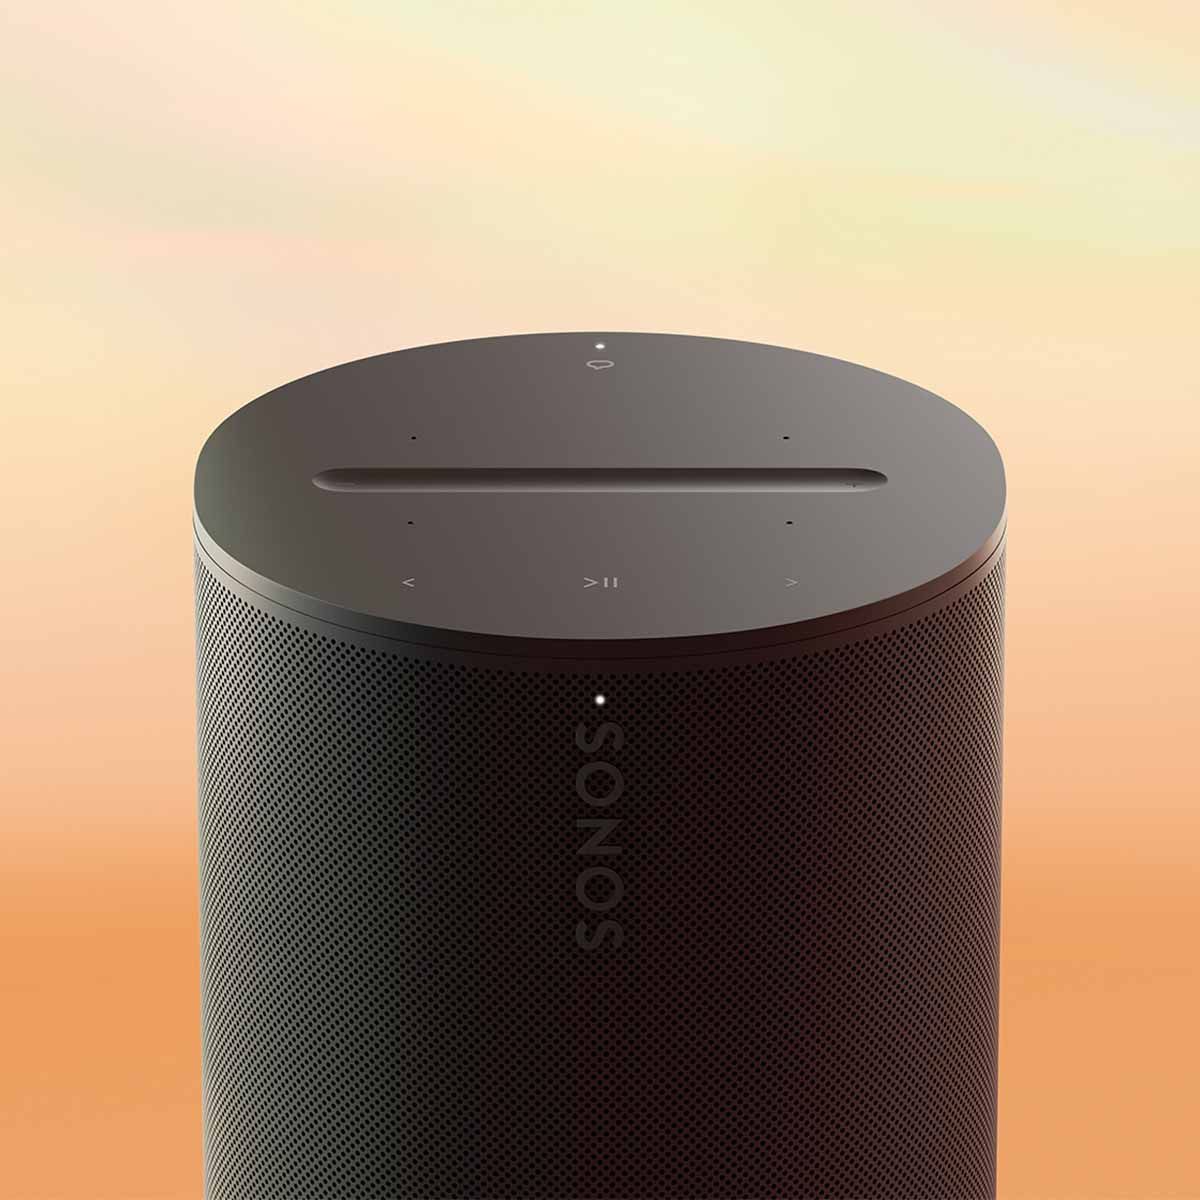 Sonos Era 100 Smart Speaker - Black - top view on tie-die background